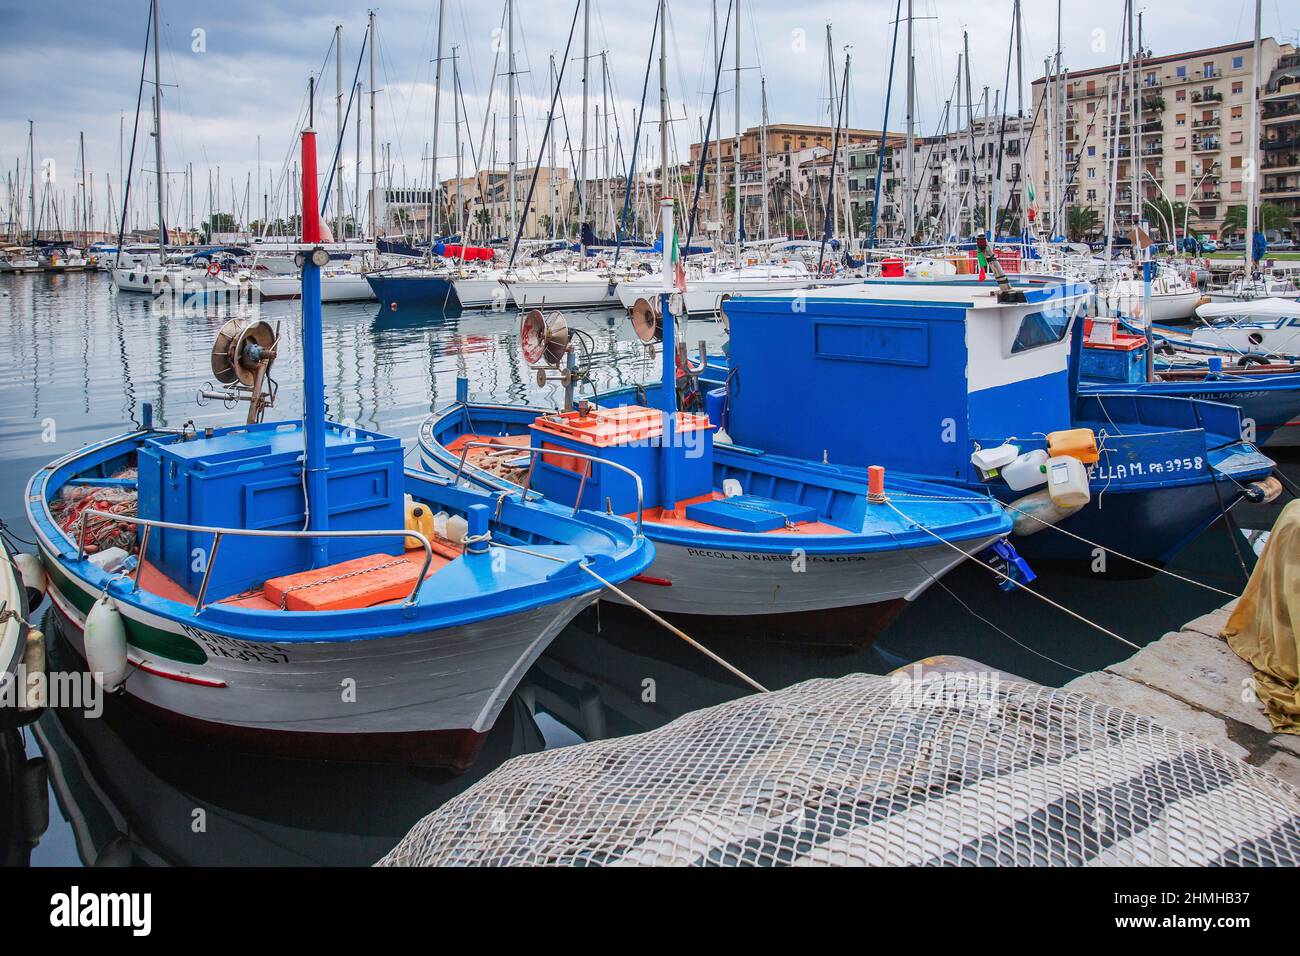 Bateaux de pêche à la Cala Marina, Palerme, Sicile, Italie Banque D'Images